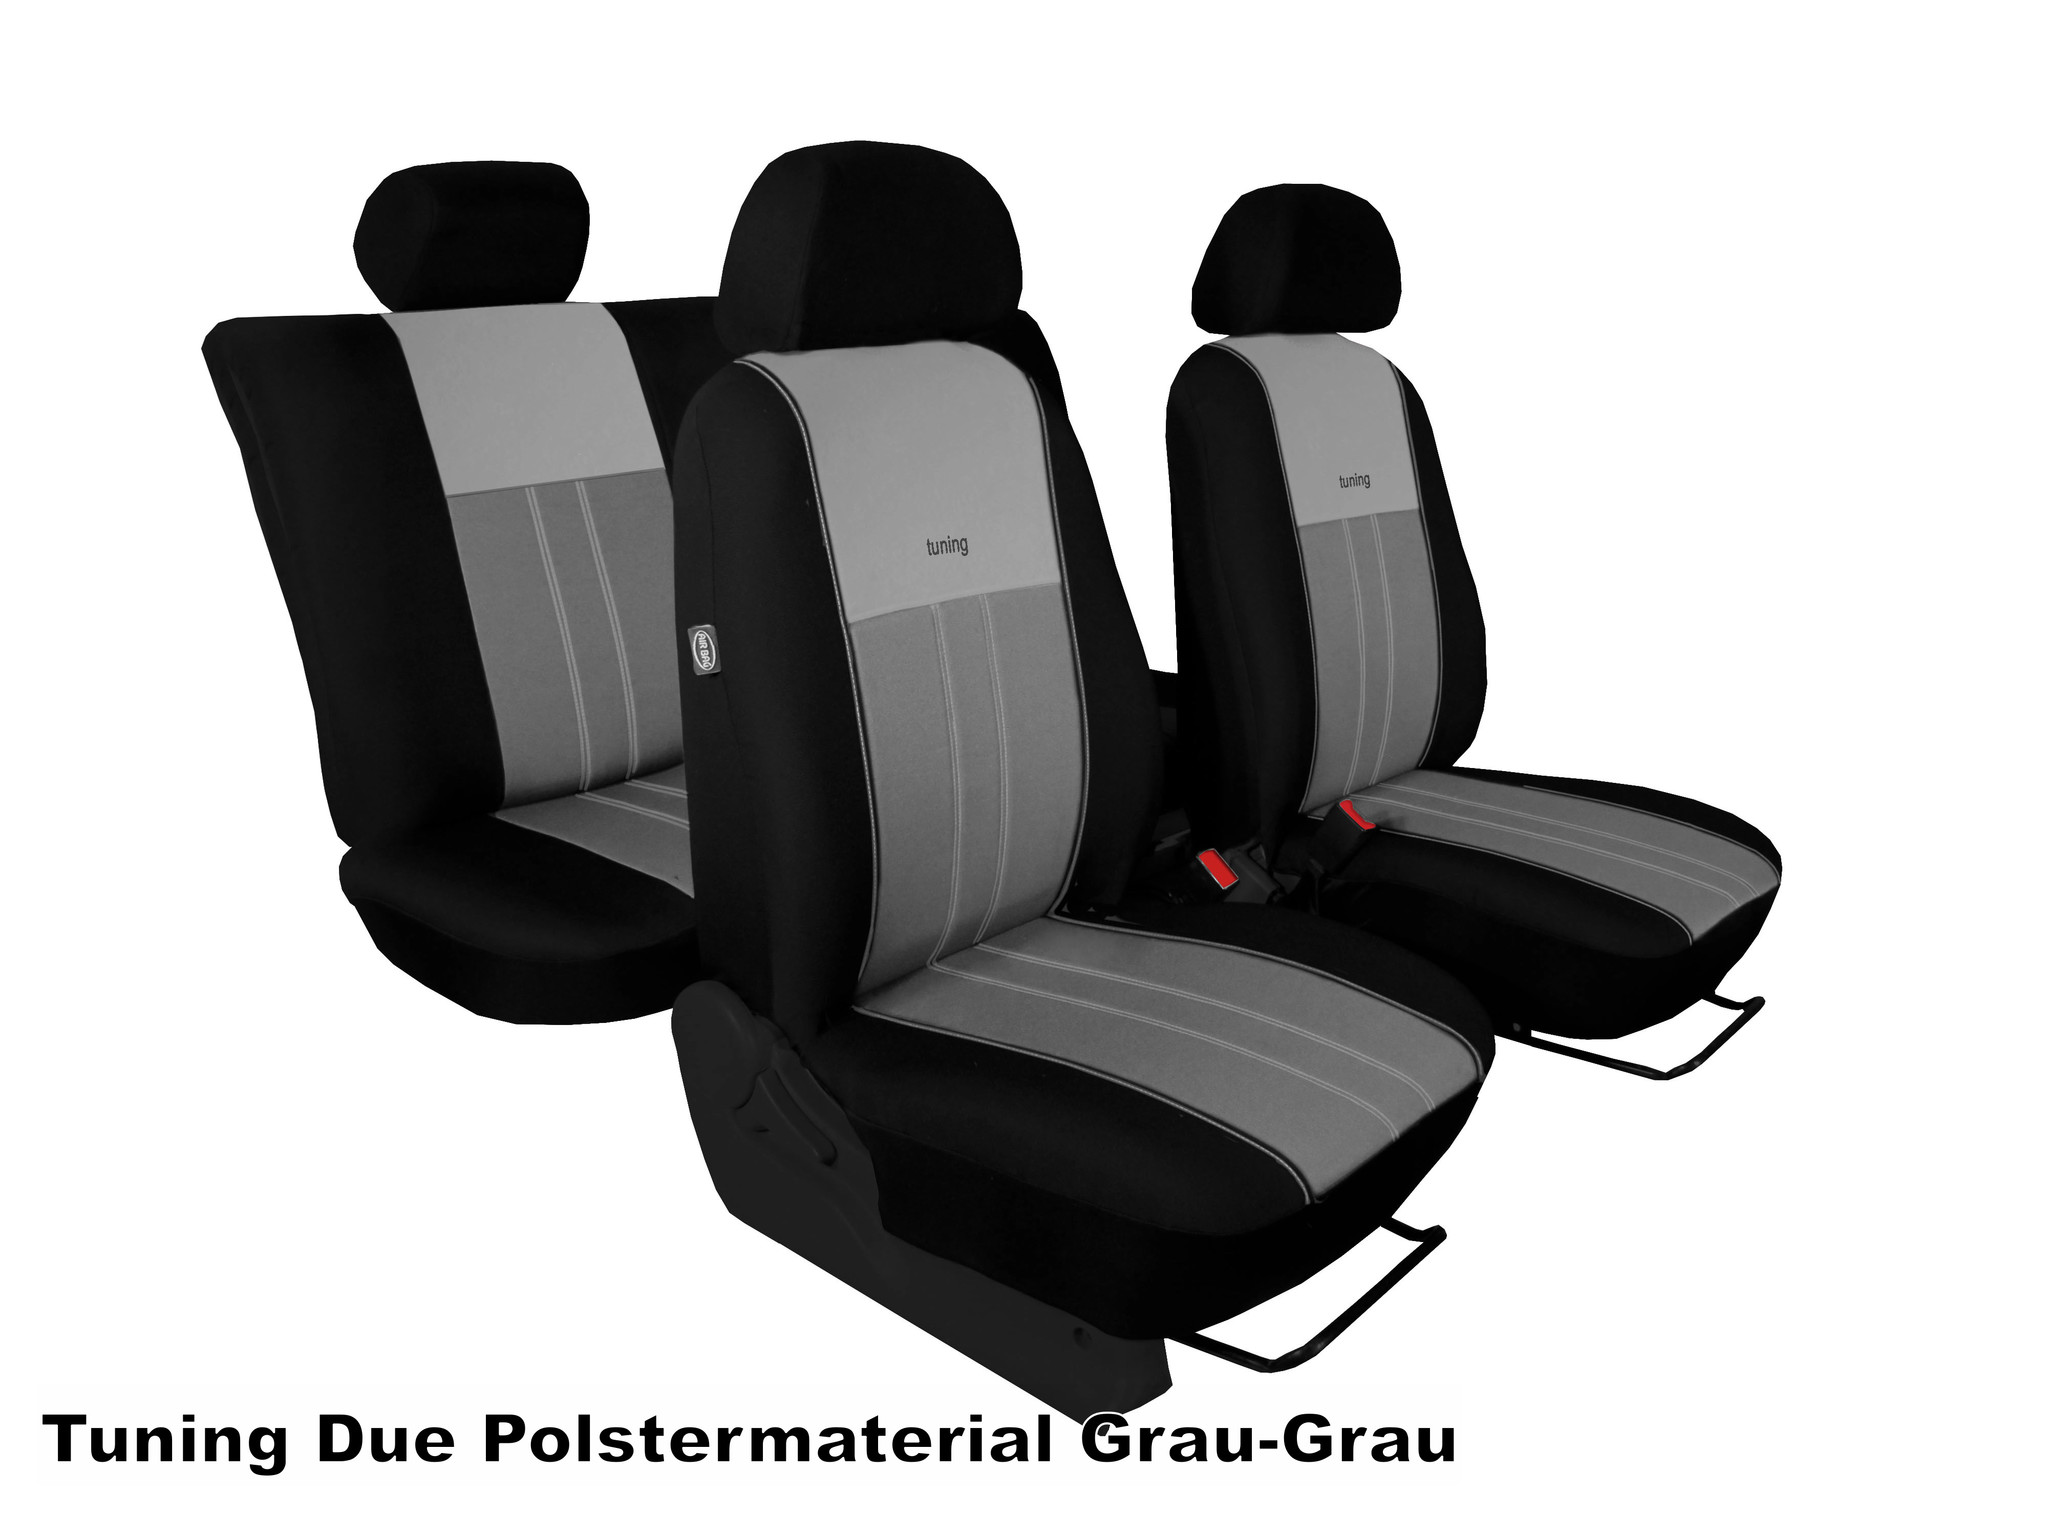 Autoschonbezüge VW Crafter zwei Einzelsitze Sitzbezüge Grau